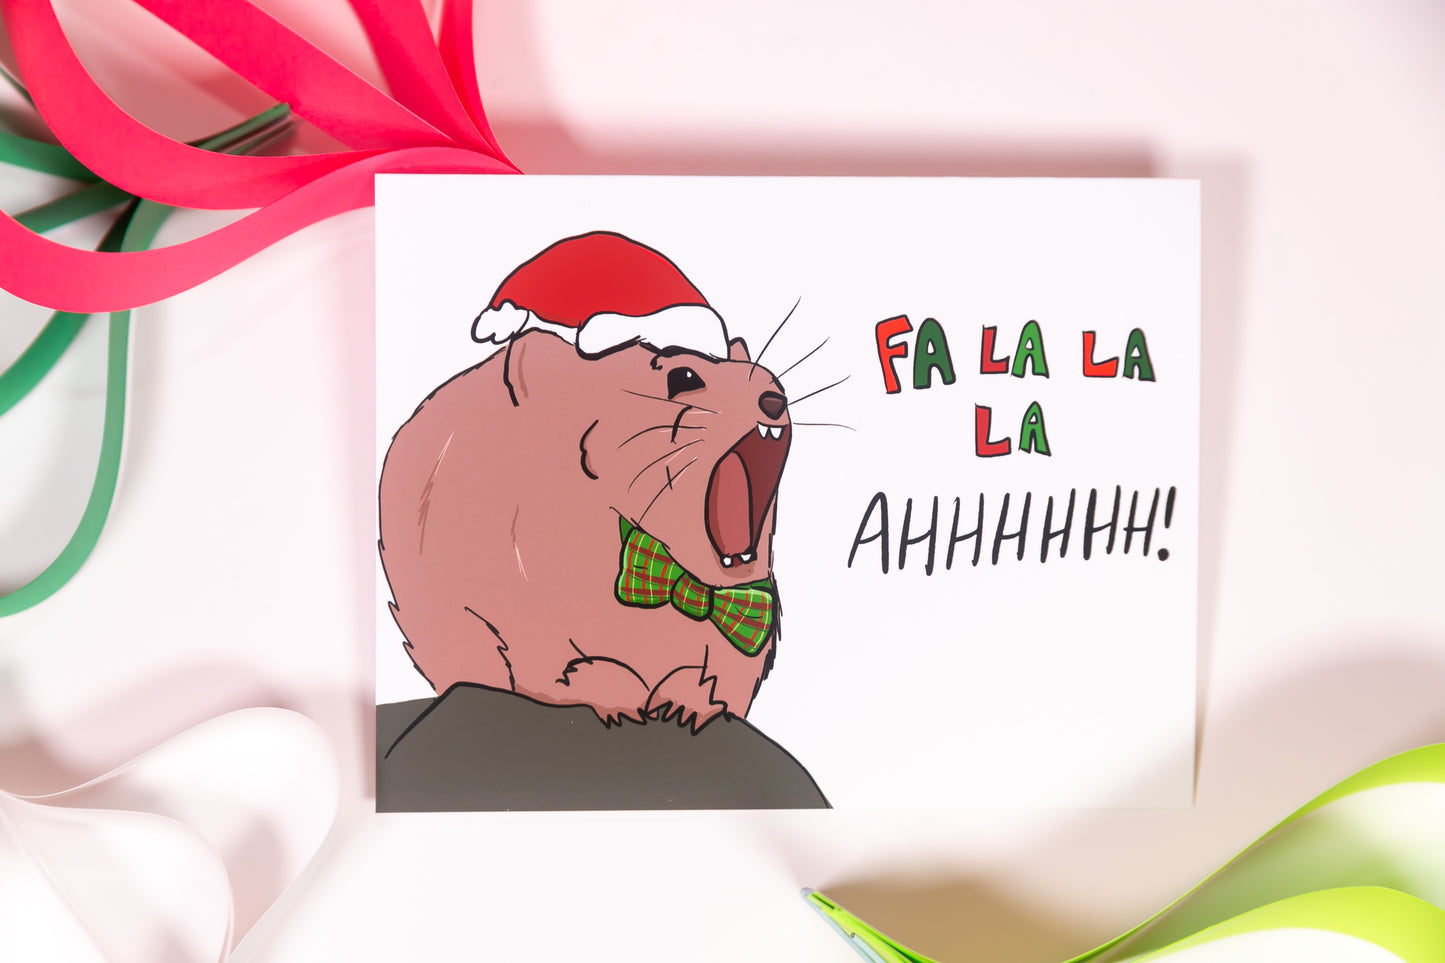 Christmas Animals Card Bundle